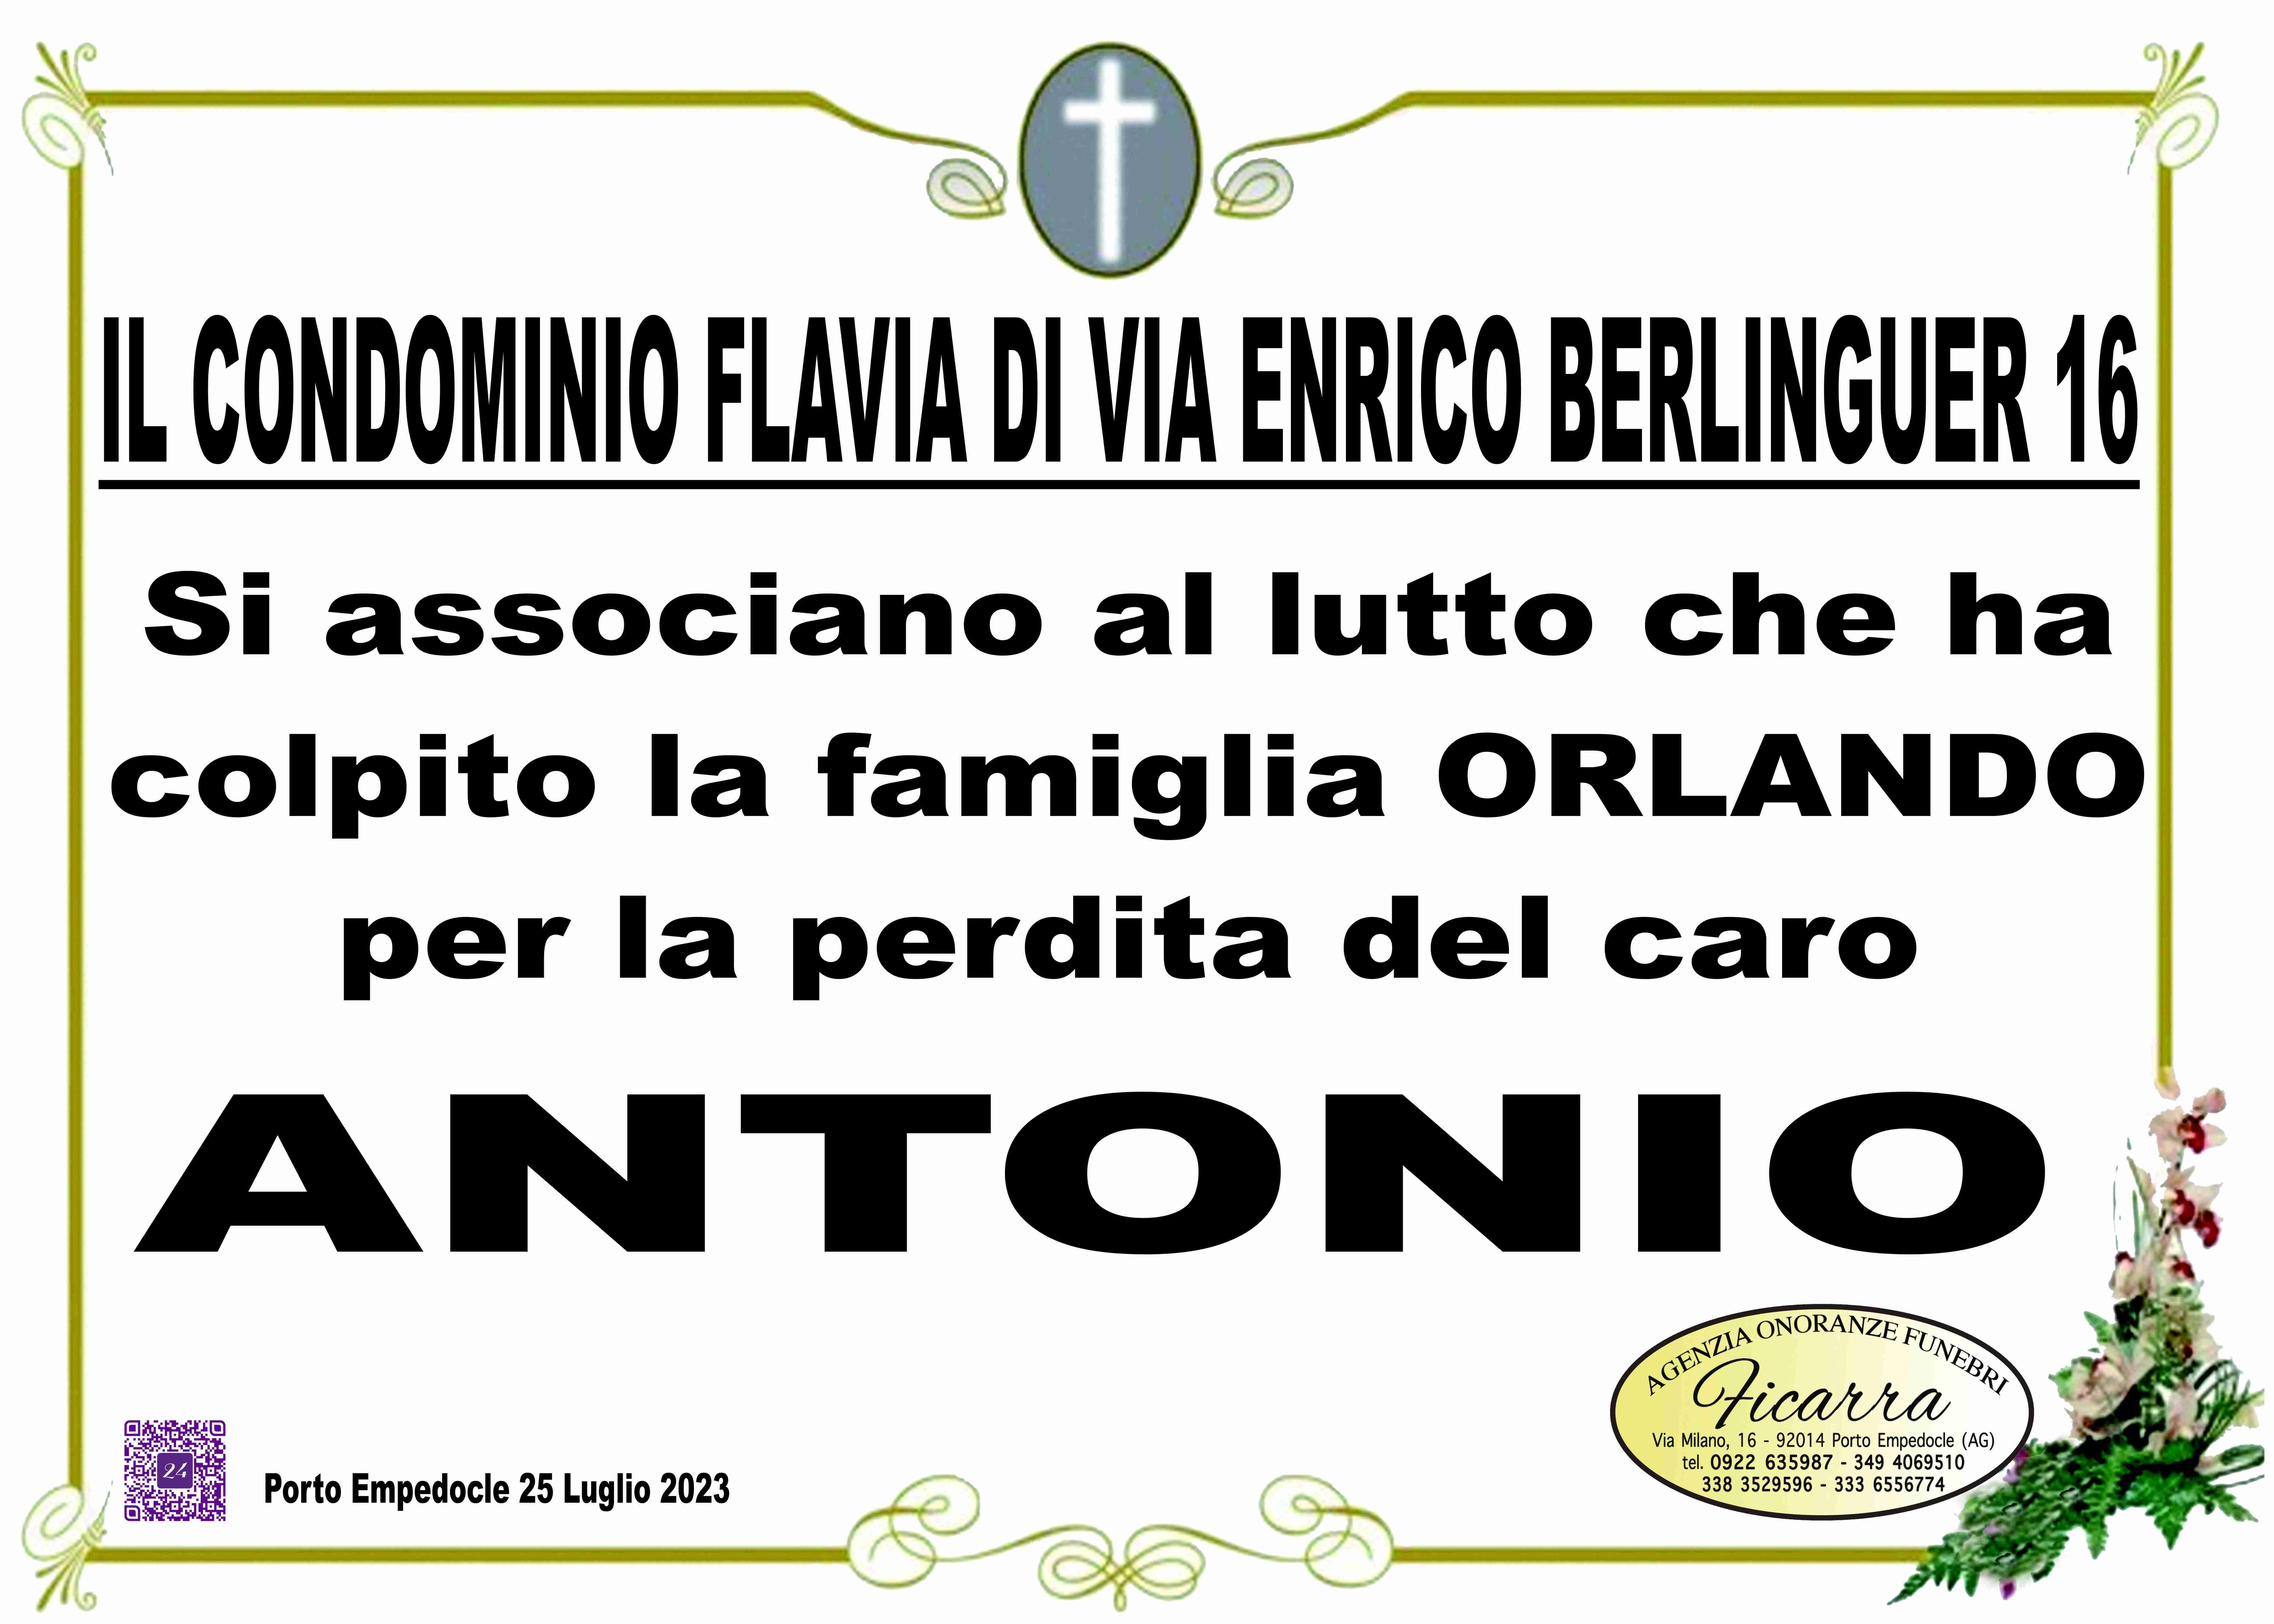 Antonio Orlando